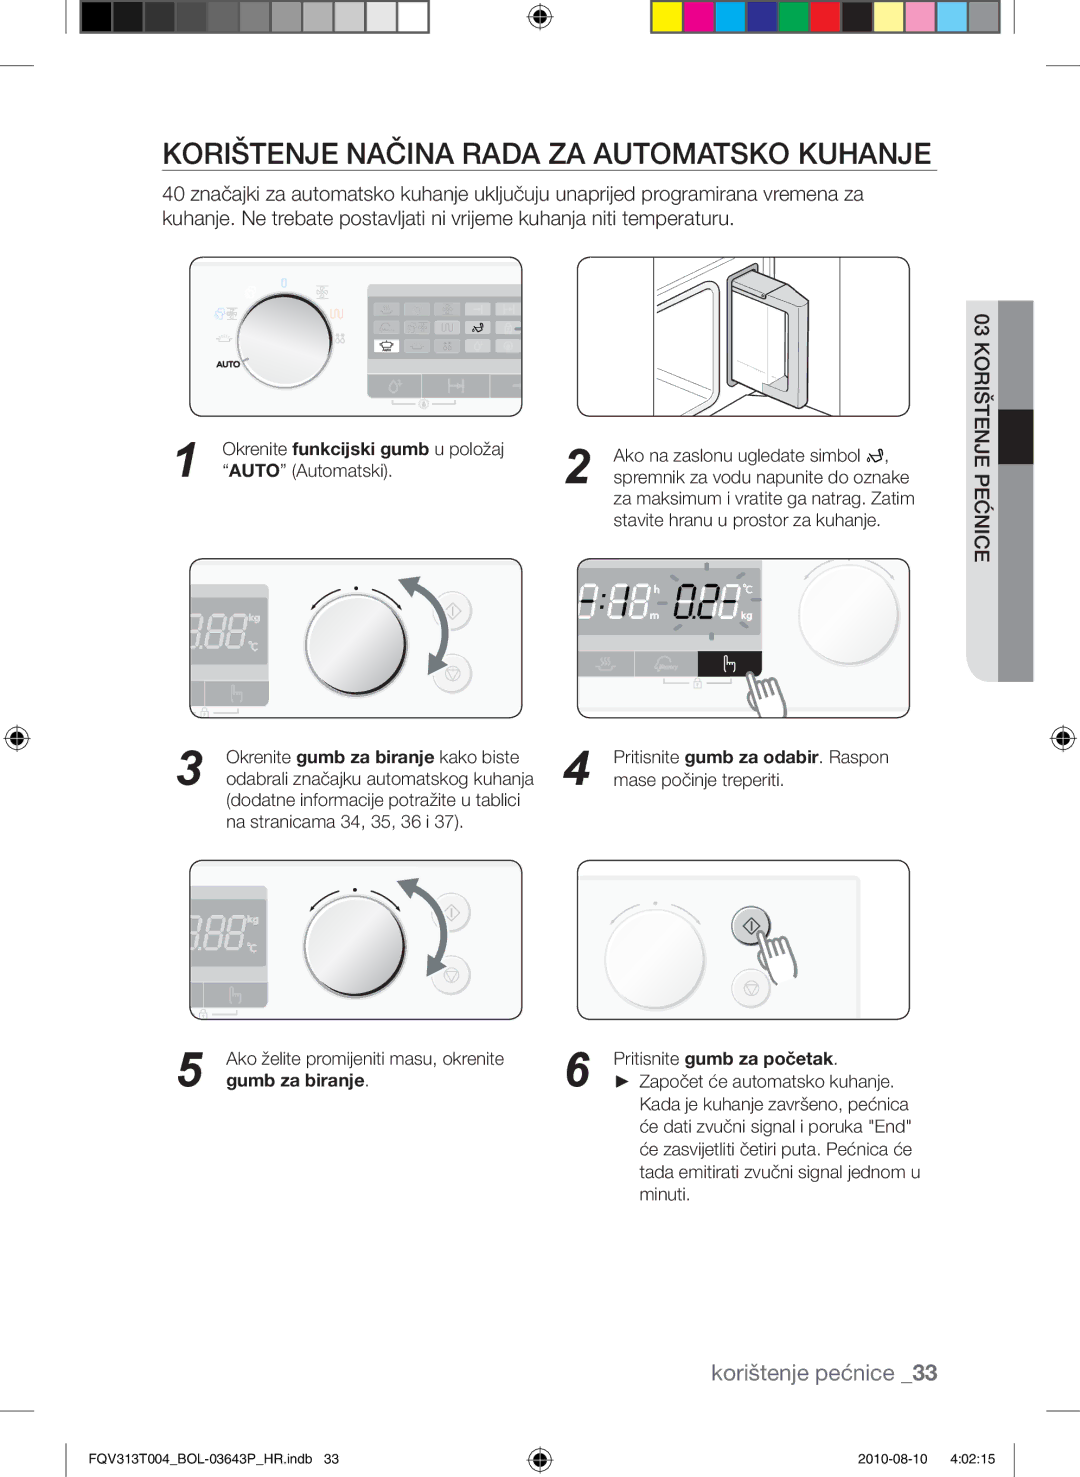 Samsung FQV313T004/BOL manual Korištenje načina rada za automatsko kuhanje, Gumb za biranje 